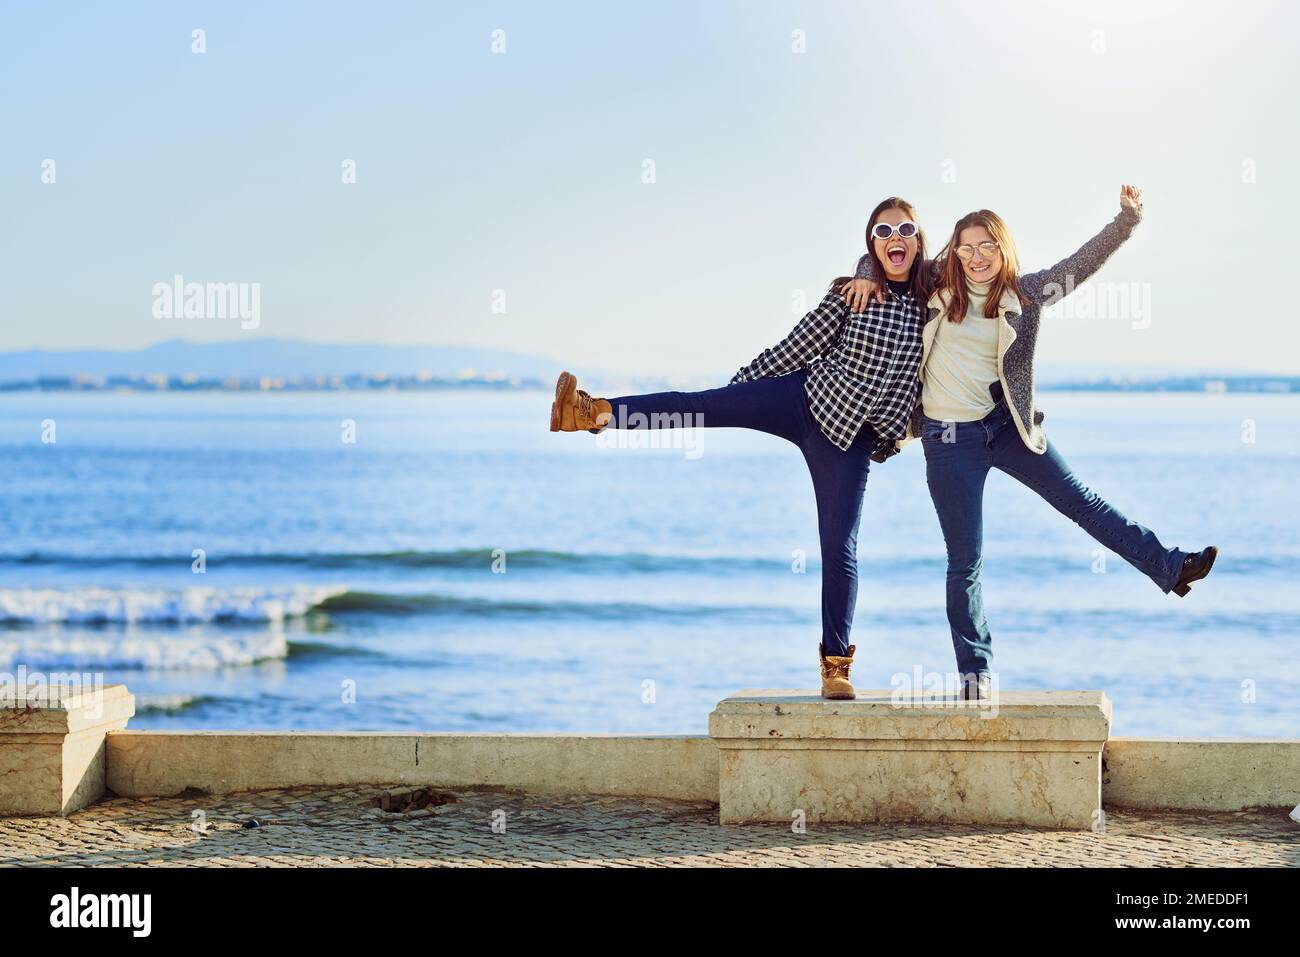 Loslassen. Ein langes Porträt von zwei attraktiven jungen Frauen, die einen Tag am Meer verbringen. Stockfoto